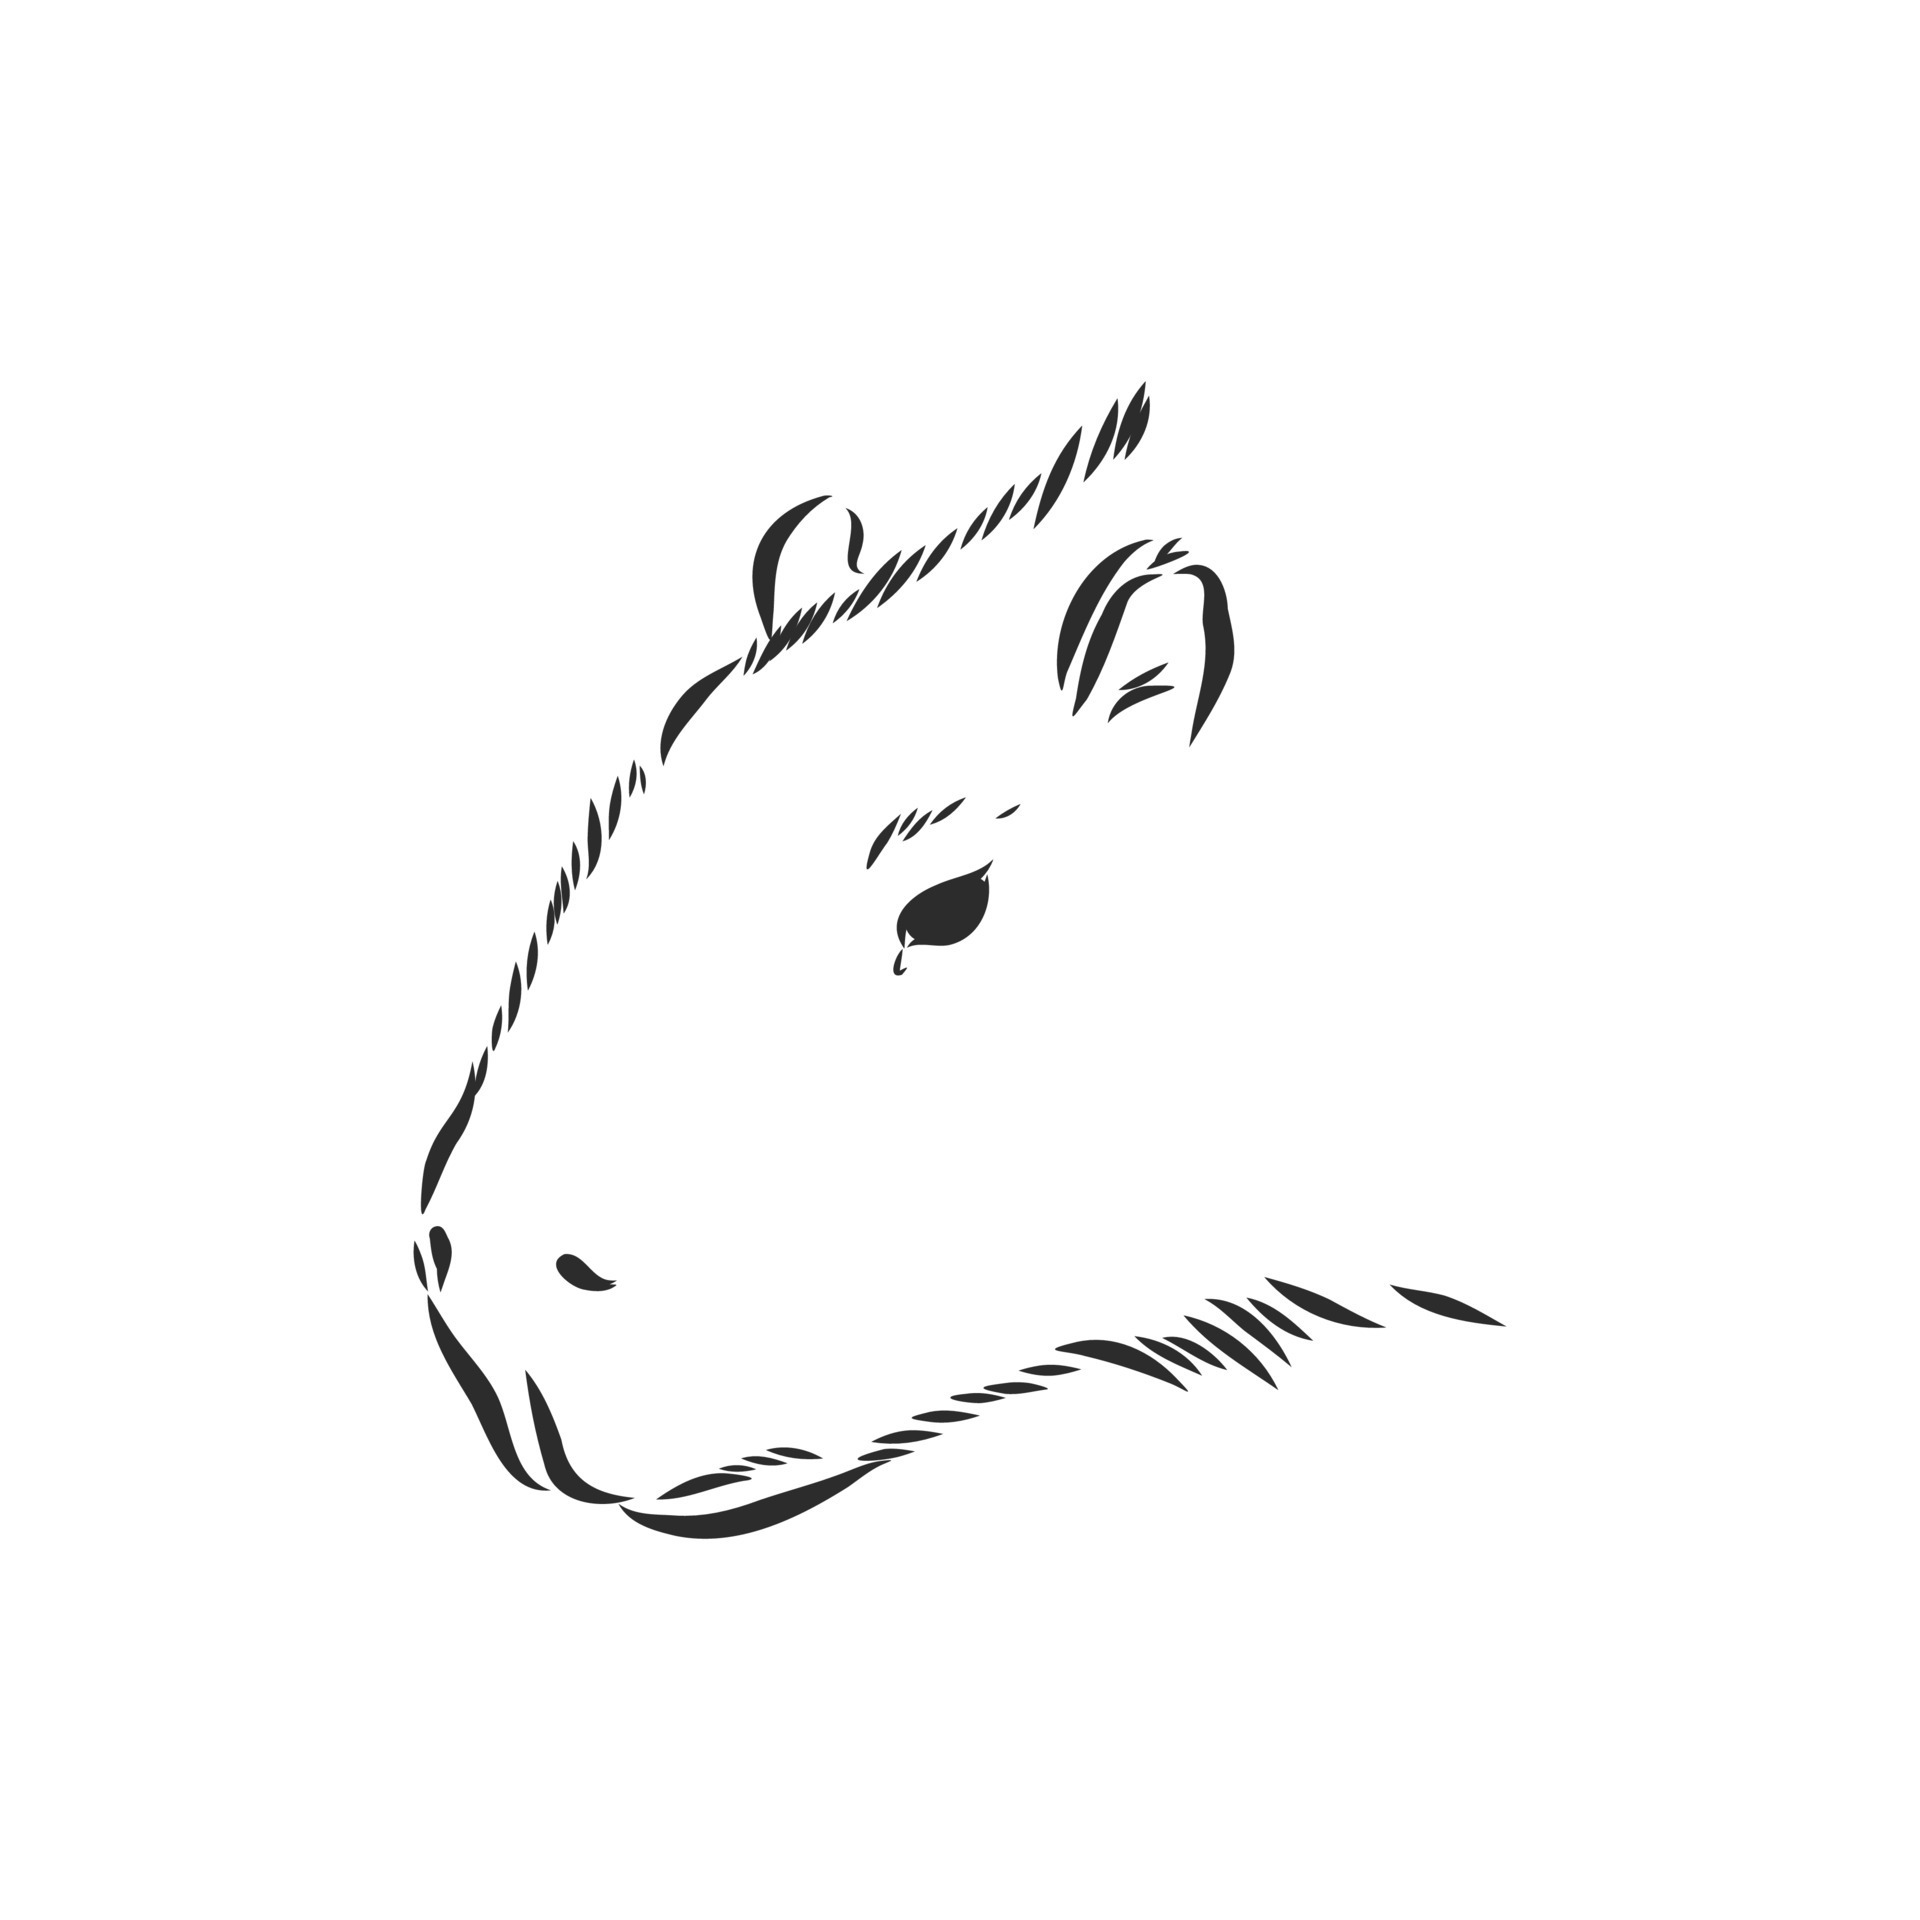 capybara vector sketch 8917850 Vector Art at Vecteezy